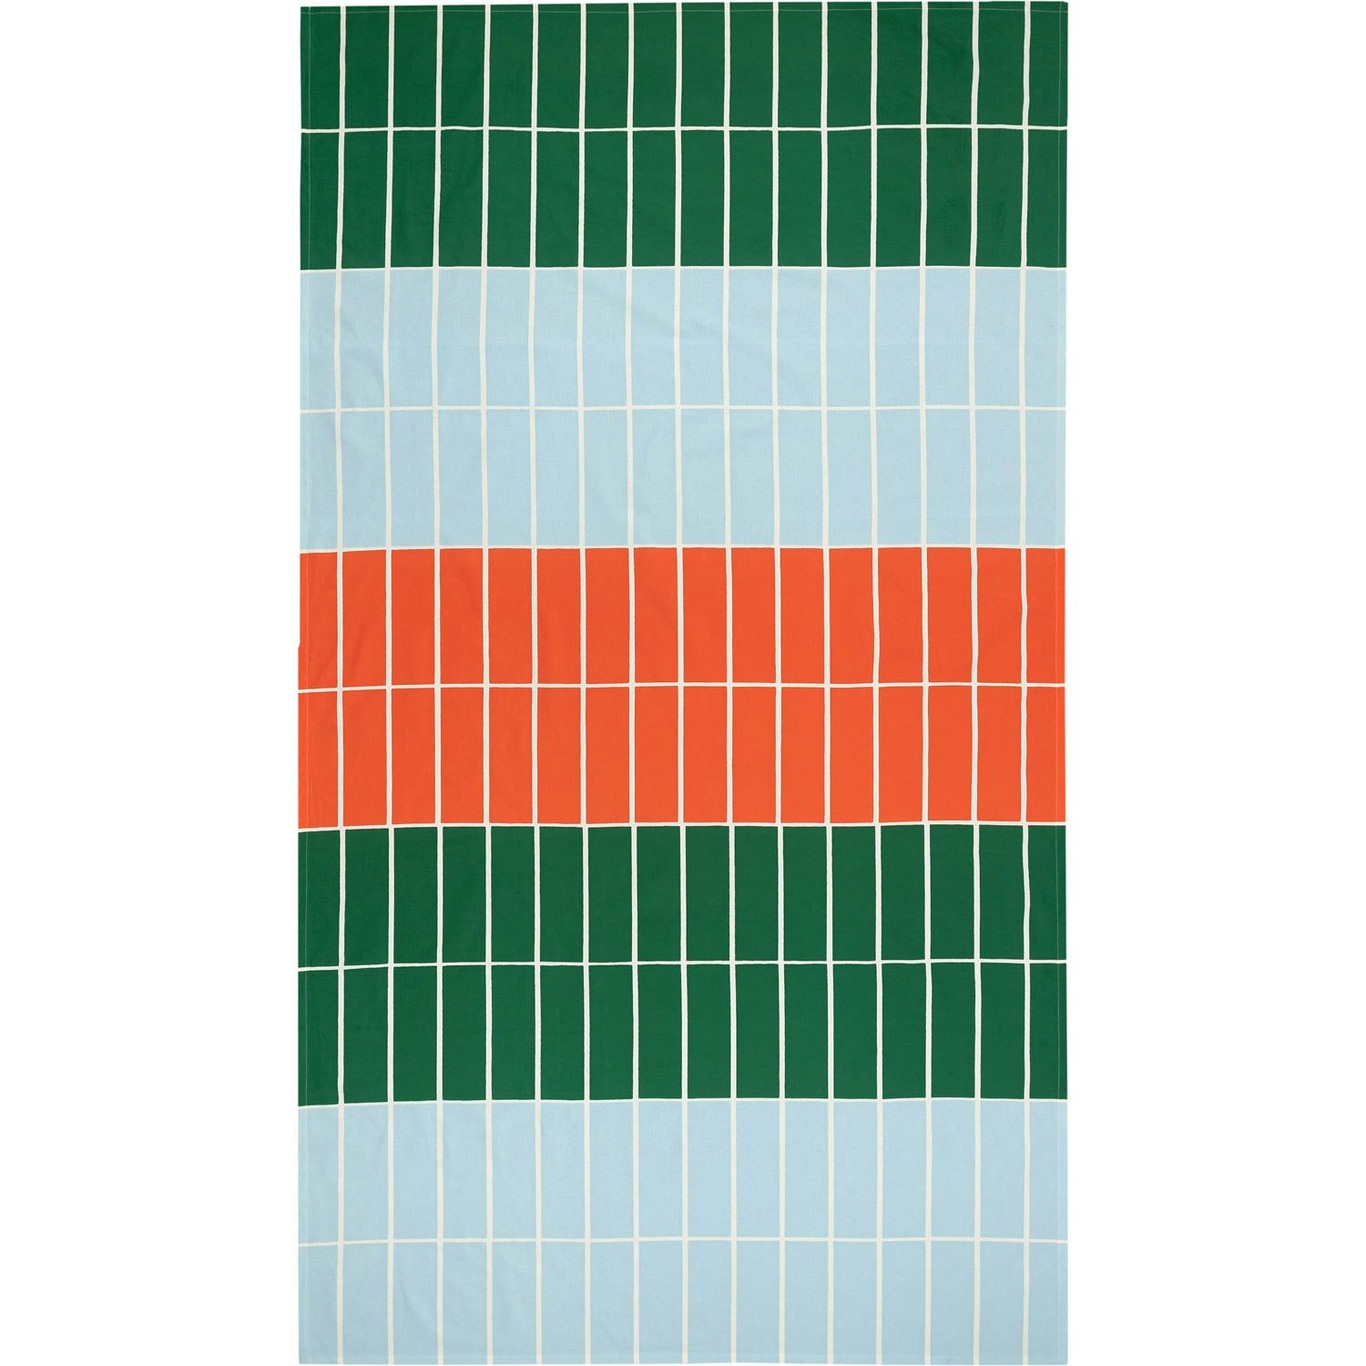 Tiiliskivi Dug 135x245 cm, Orange / Lyseblå / Grøn